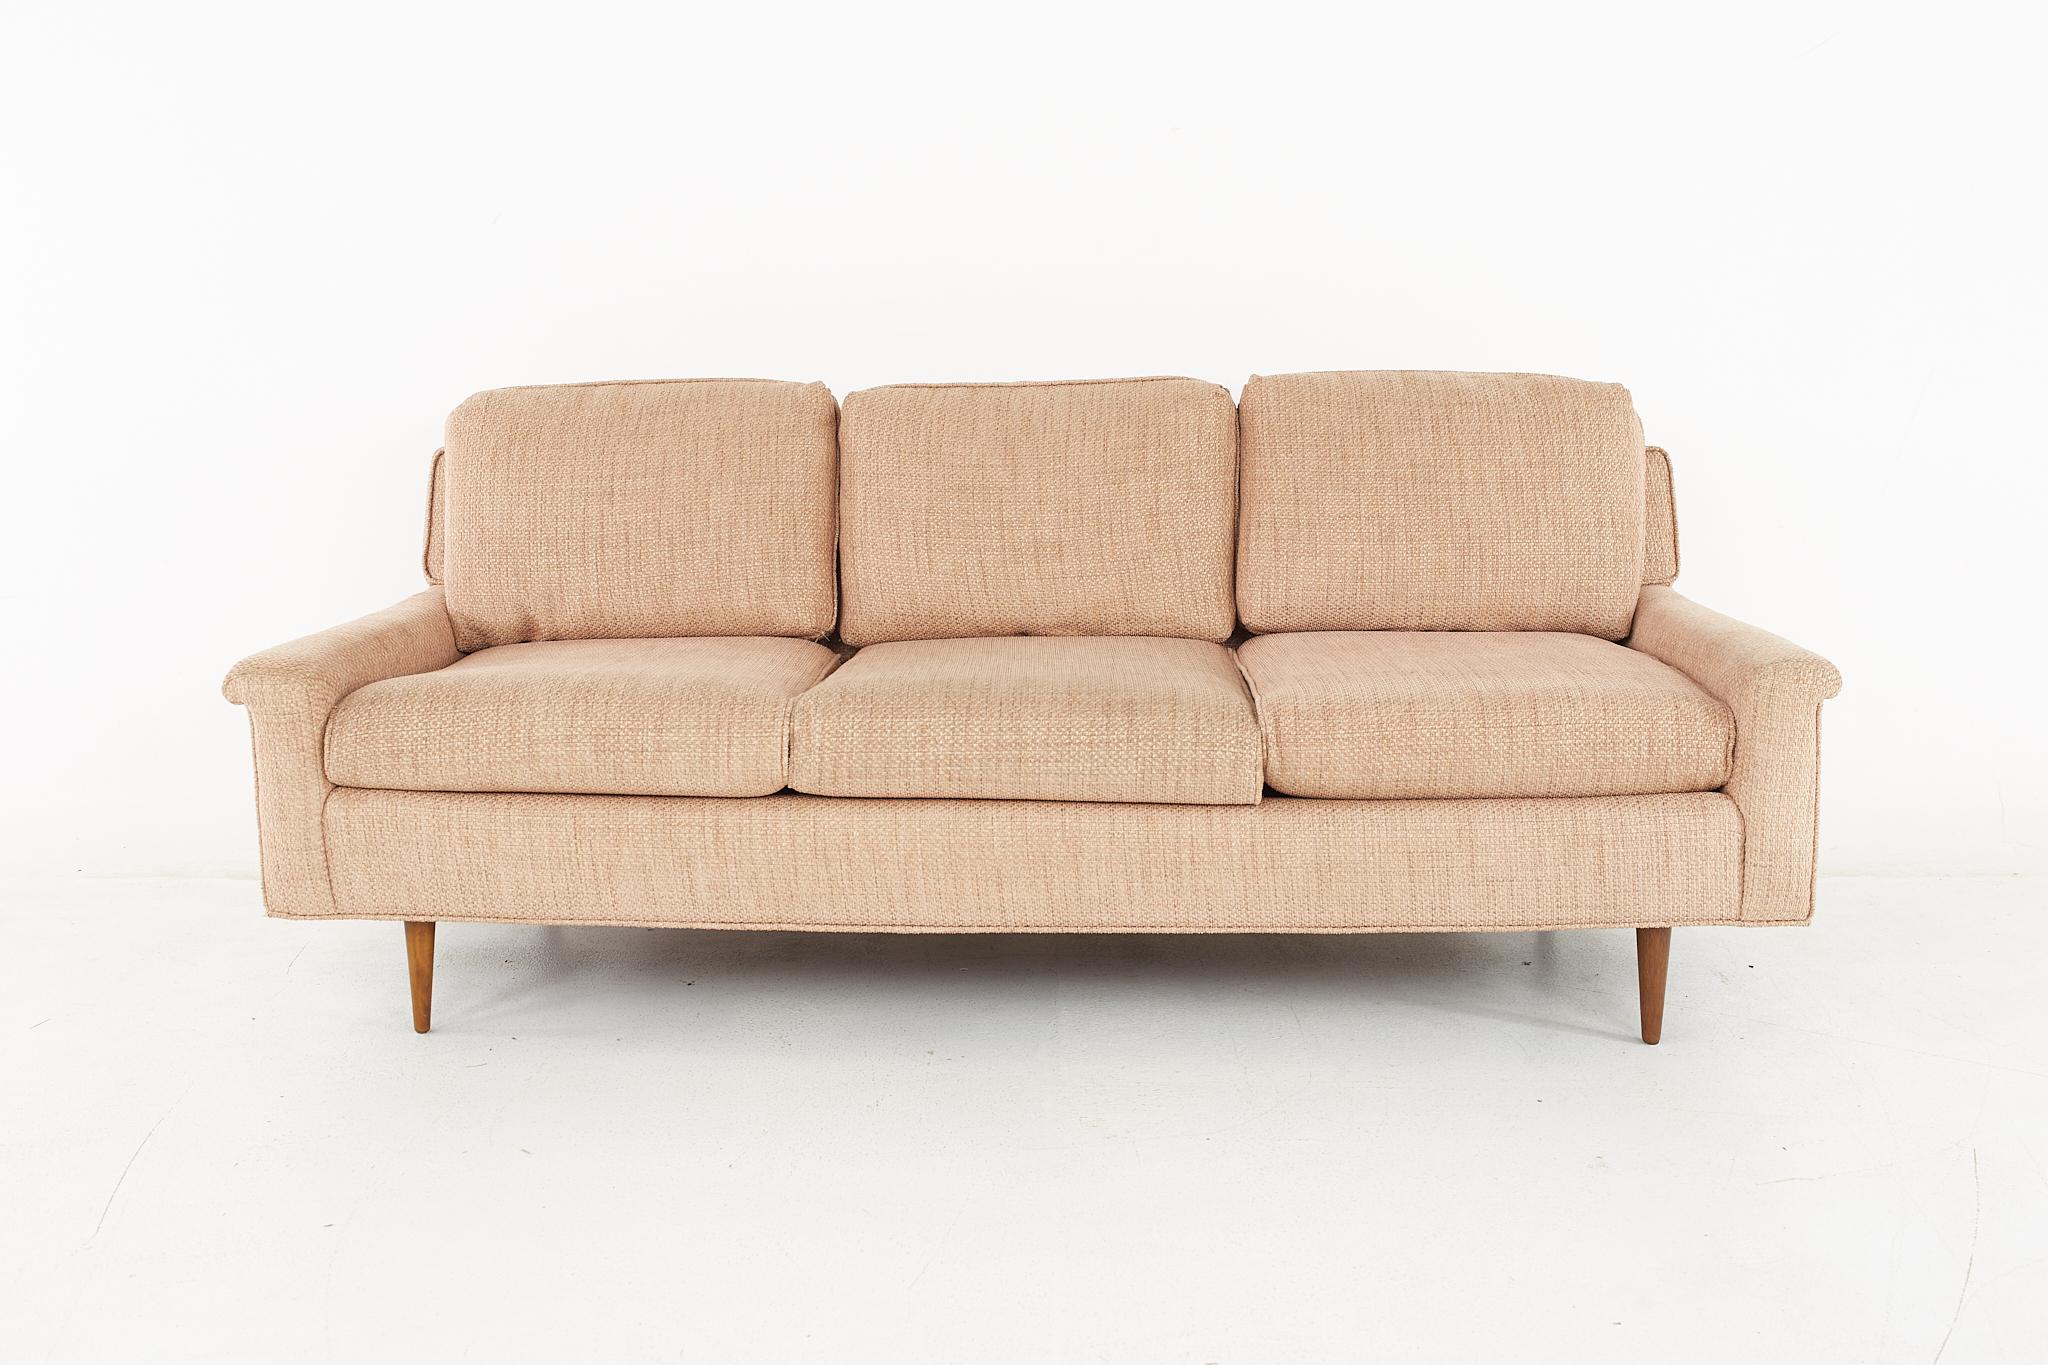 Milo Baughman für Thayer Coggin Stil Sofa aus der Mitte des Jahrhunderts mit neuem Stoff

Dieses Sofa misst: 77 breit x 32 tief x 31 hoch, mit einer Sitzhöhe von 18 Zoll

Möbelstücke können in einem so genannten restaurierten Vintage-Zustand